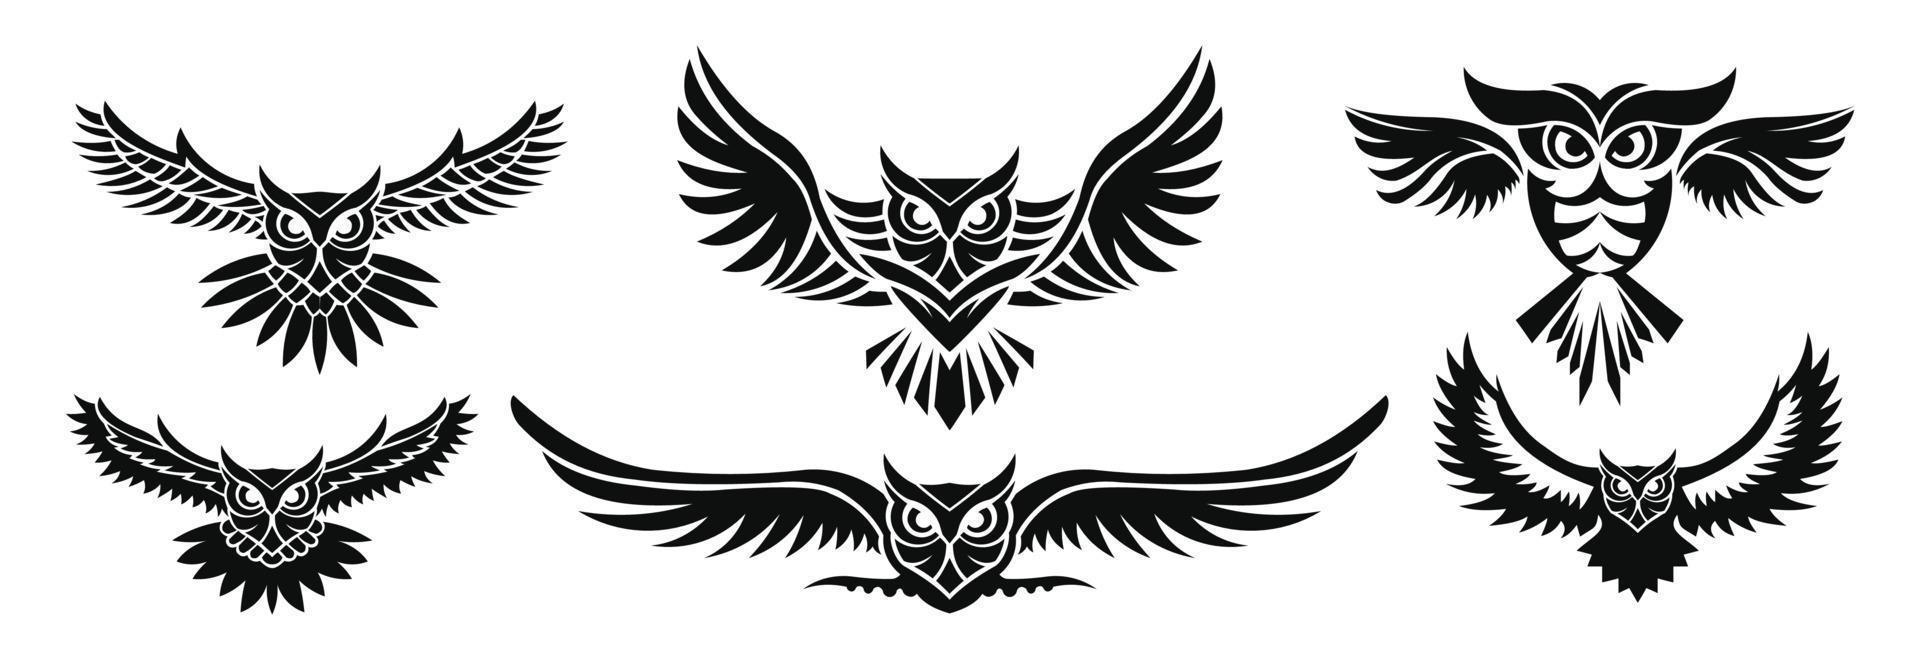 logotipo de coruja de inspiração, design de logotipo de óculos de sol de coruja, design de mascote de coruja, vetor de design de personagens de coruja